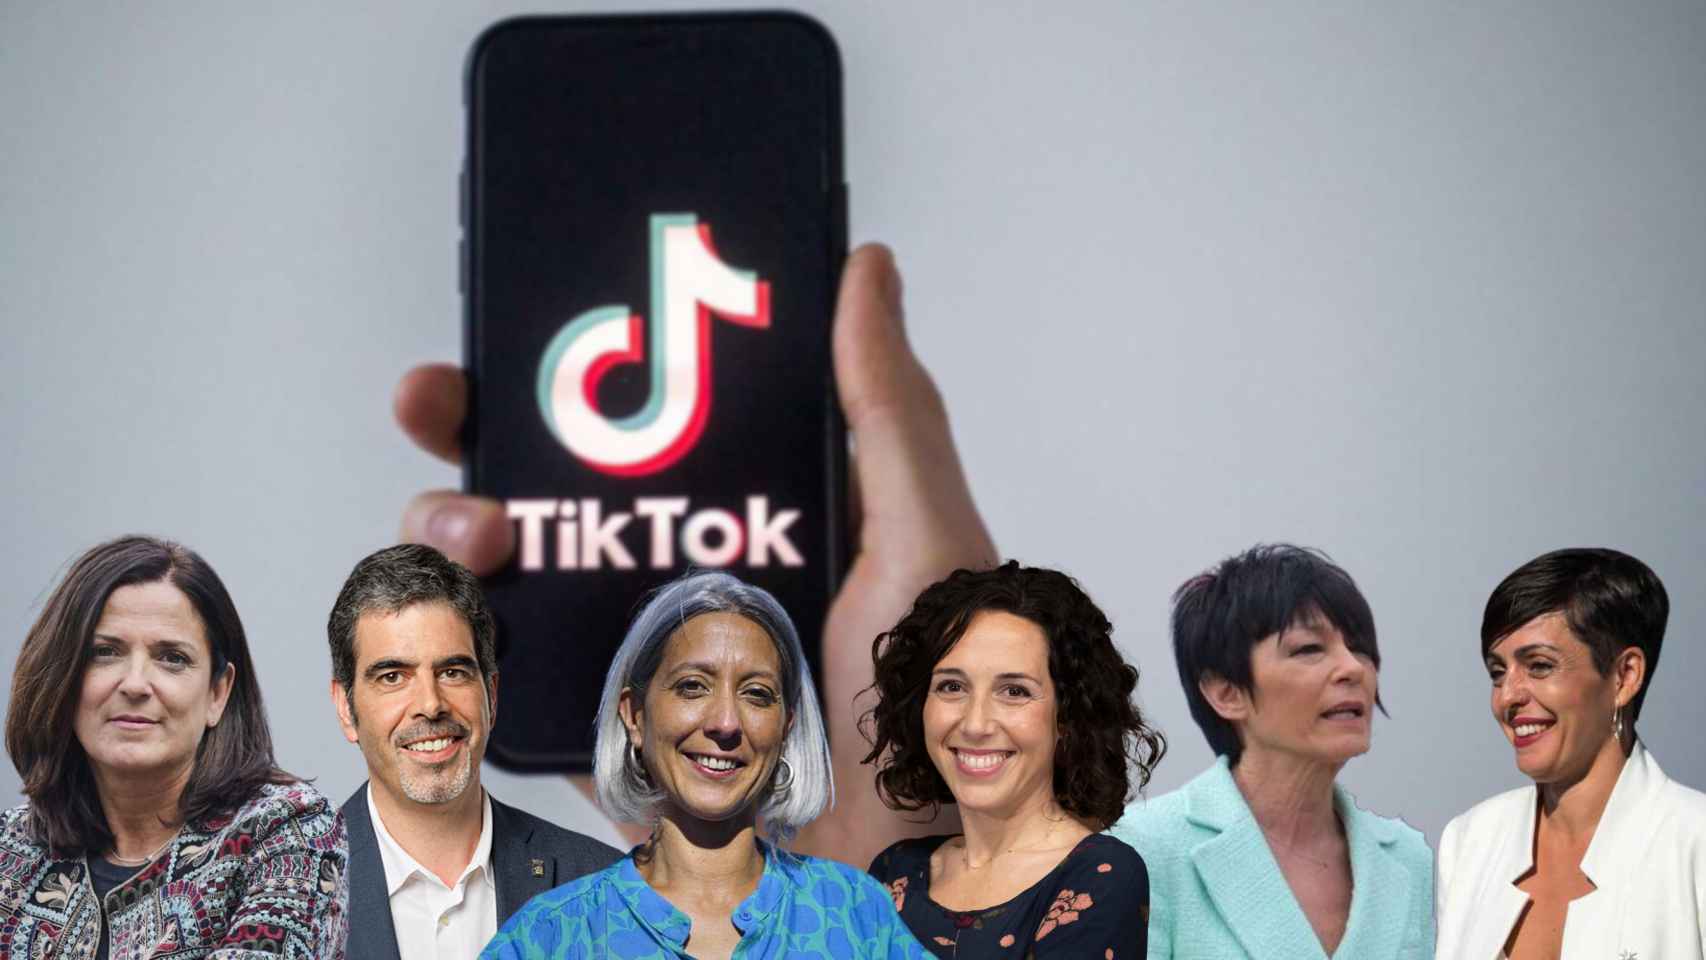 La metamorfosis de los partidos vascos: de los carteles electorales a Instagram y Tik Tok